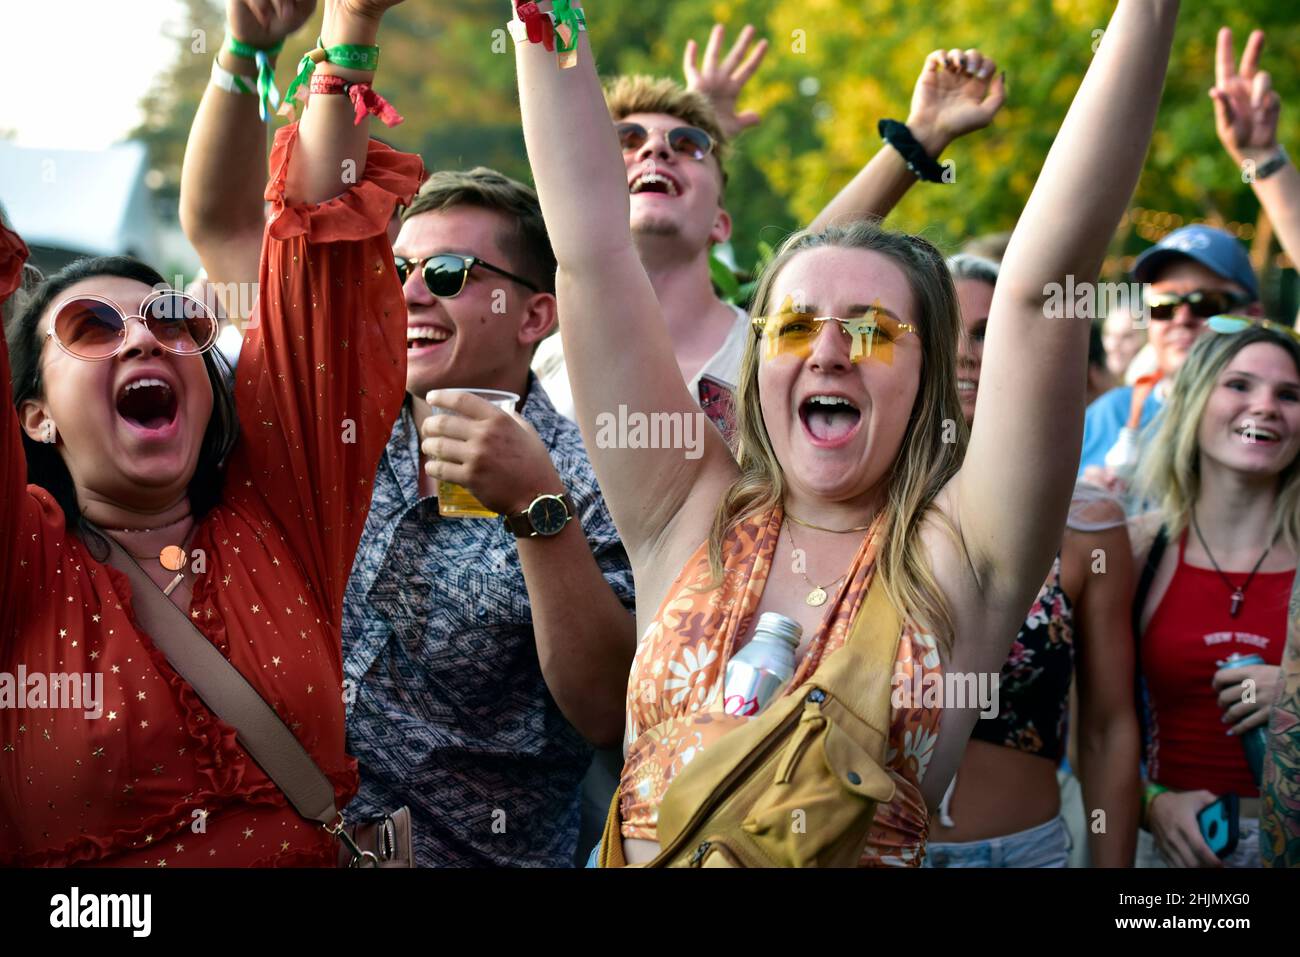 September 03, 2021 - BottleRock Festival, Napa, California - BottleRock Music Festival Crowd Having Fun Stock Photo